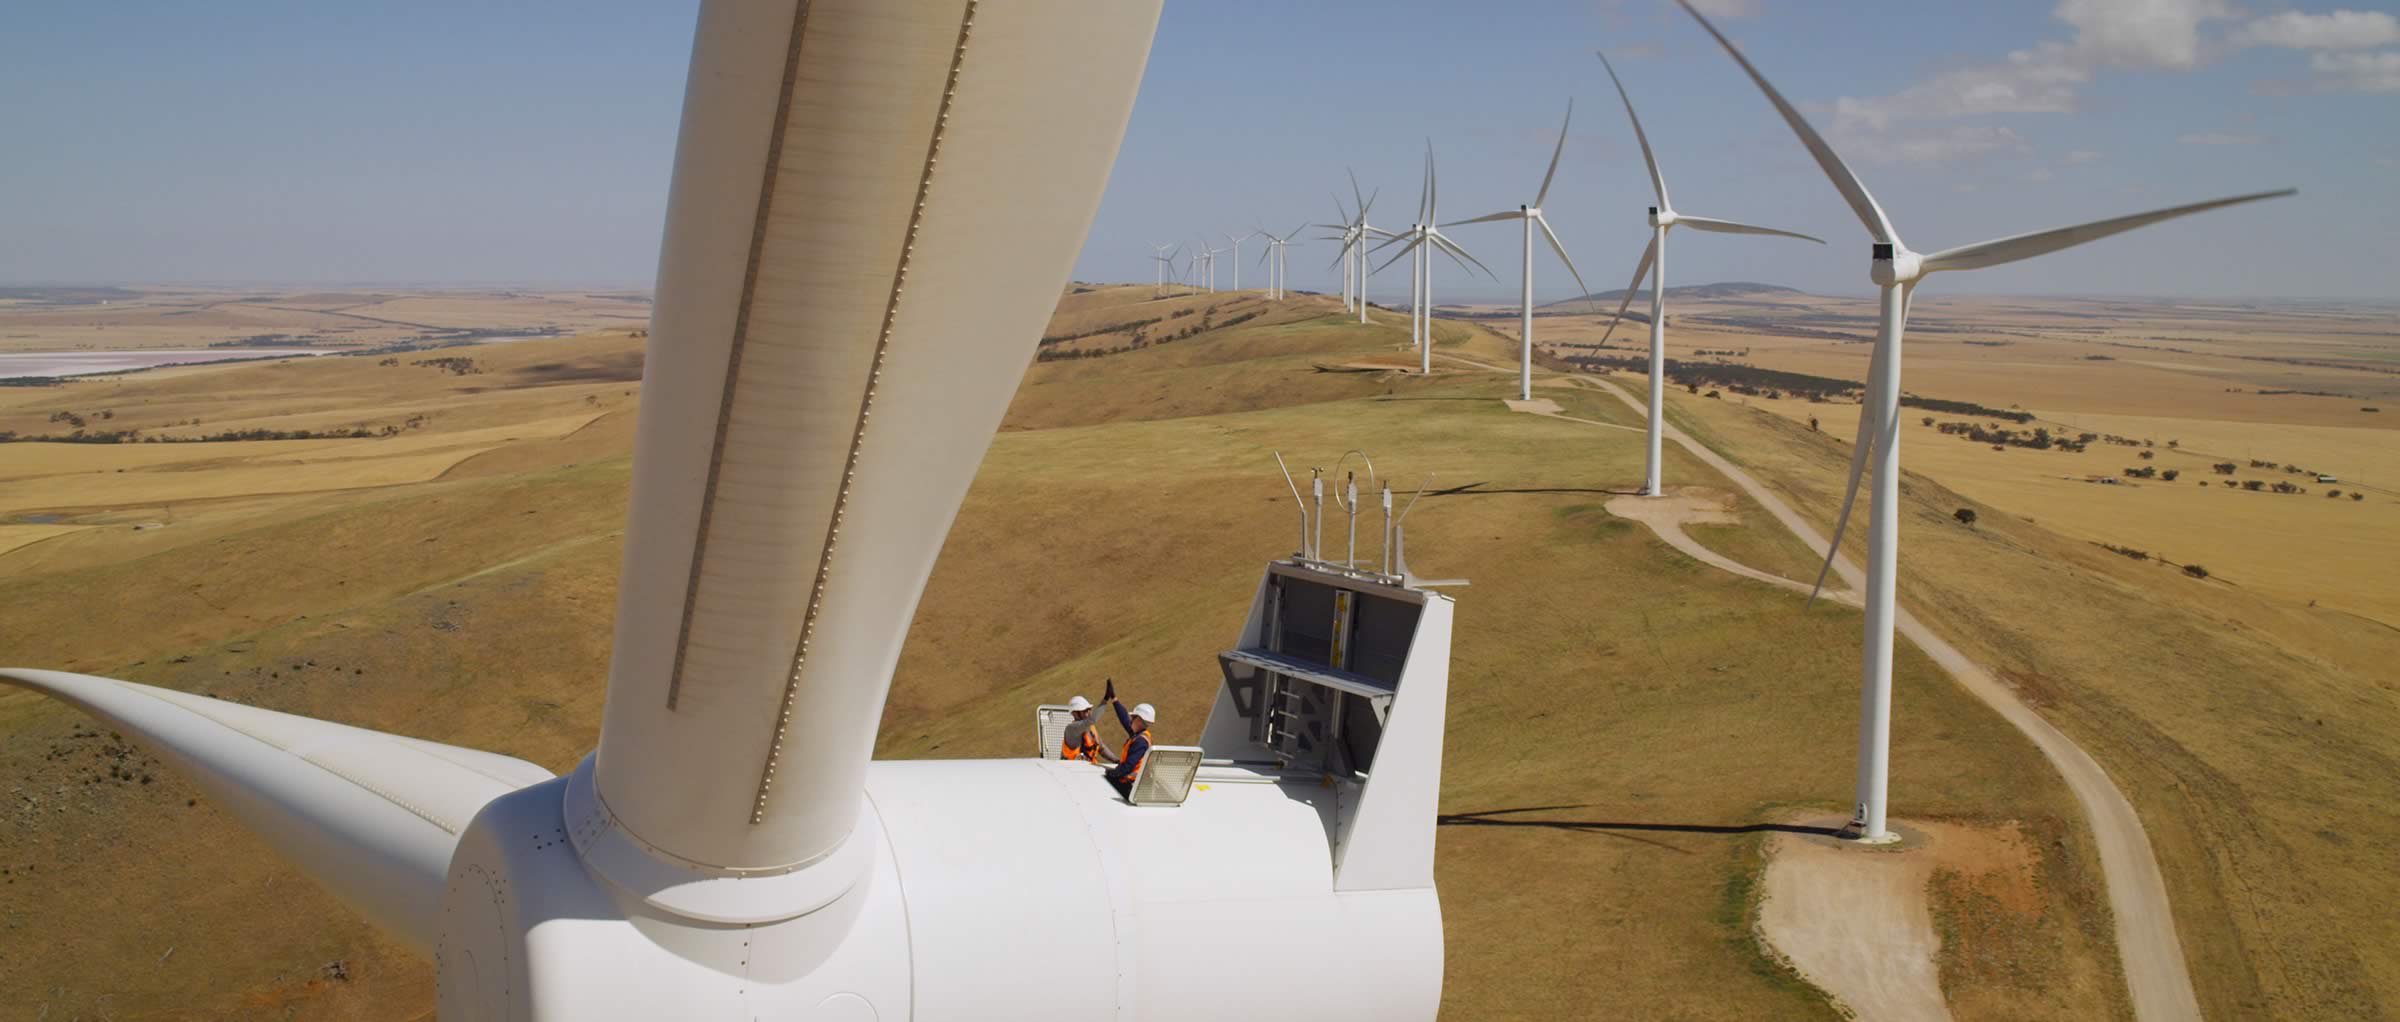 Snowtown Wind Farm II – Siemens Australia/New Era Media